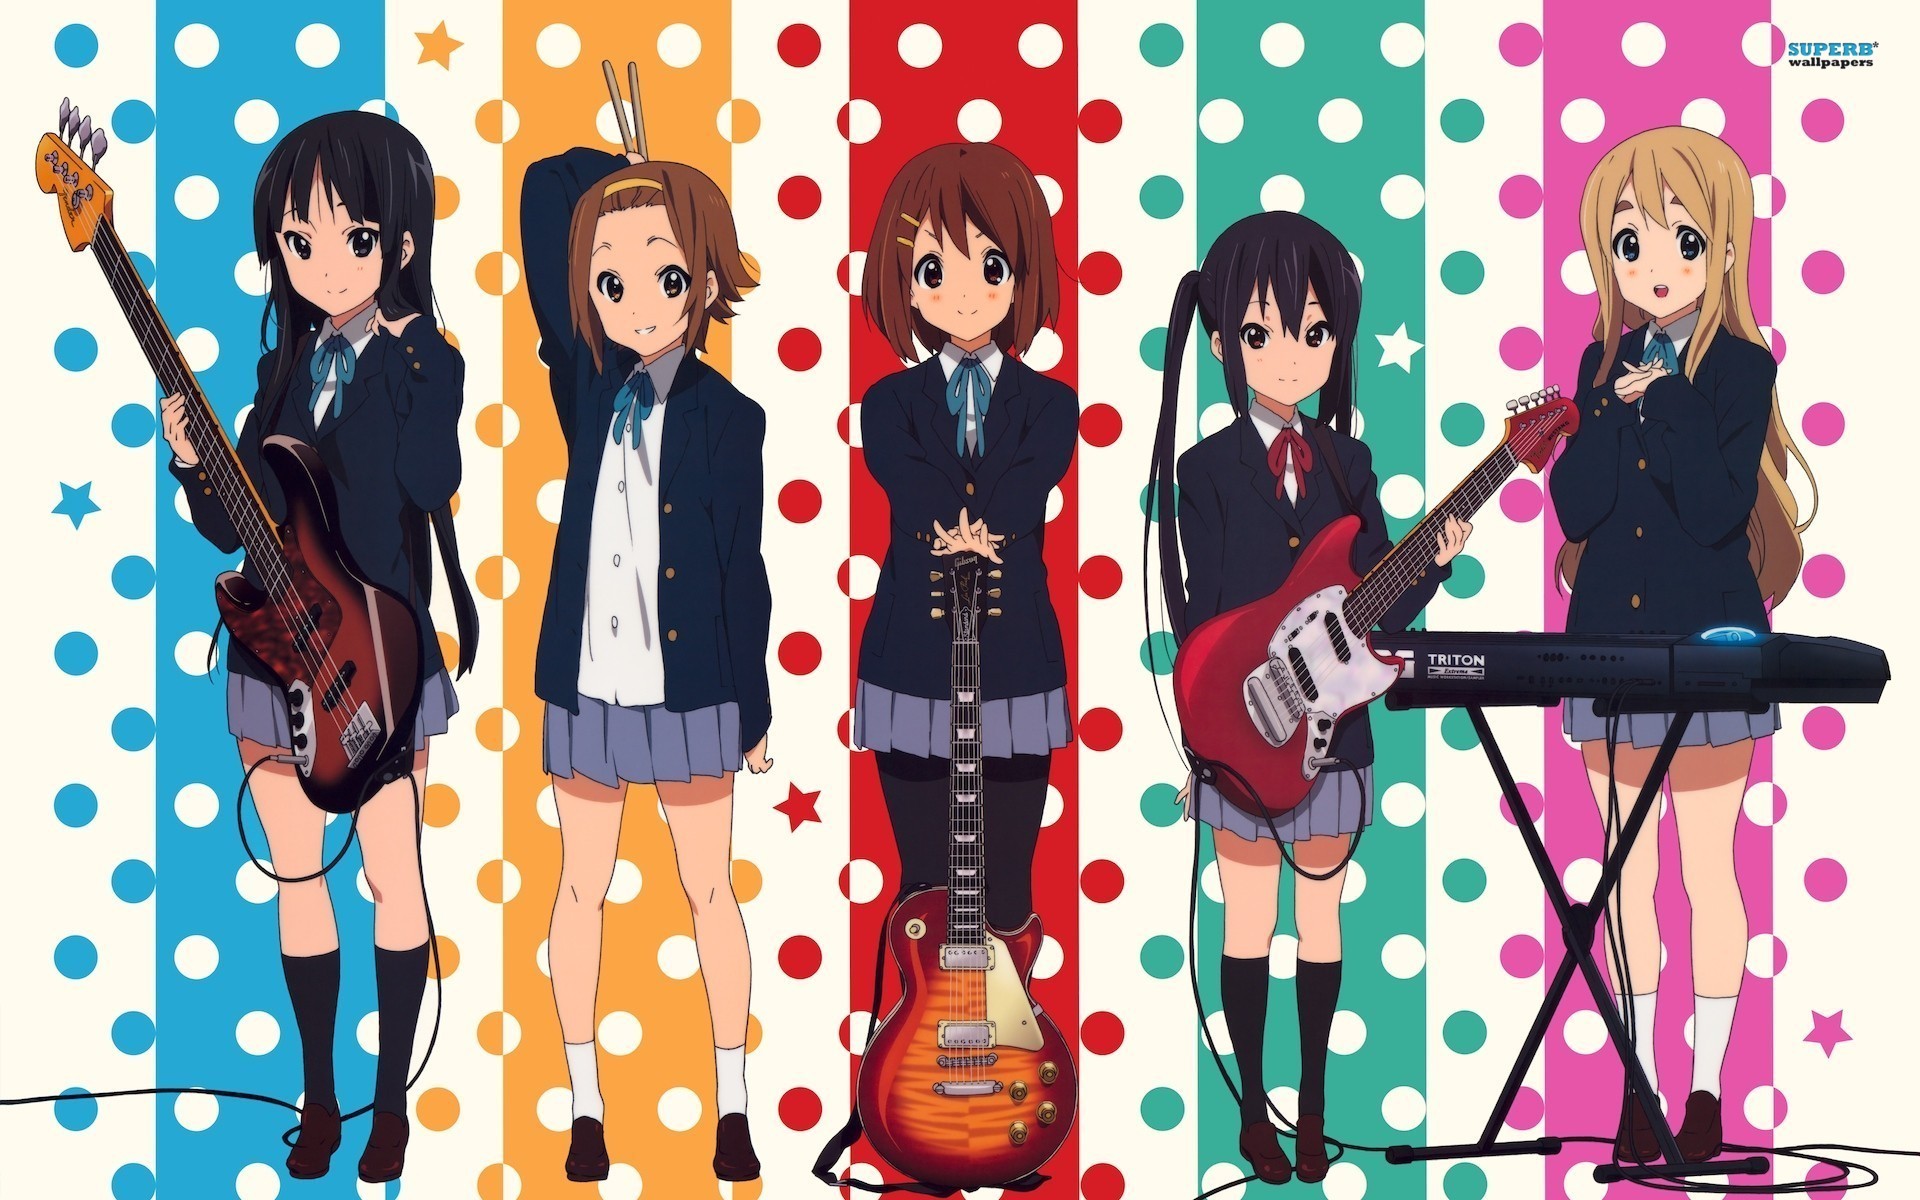 Anime 1920x1200 anime girls anime K-ON! Akiyama Mio Tainaka Ritsu Hirasawa Yui Nakano Azusa Kotobuki Tsumugi band music guitar musical instrument